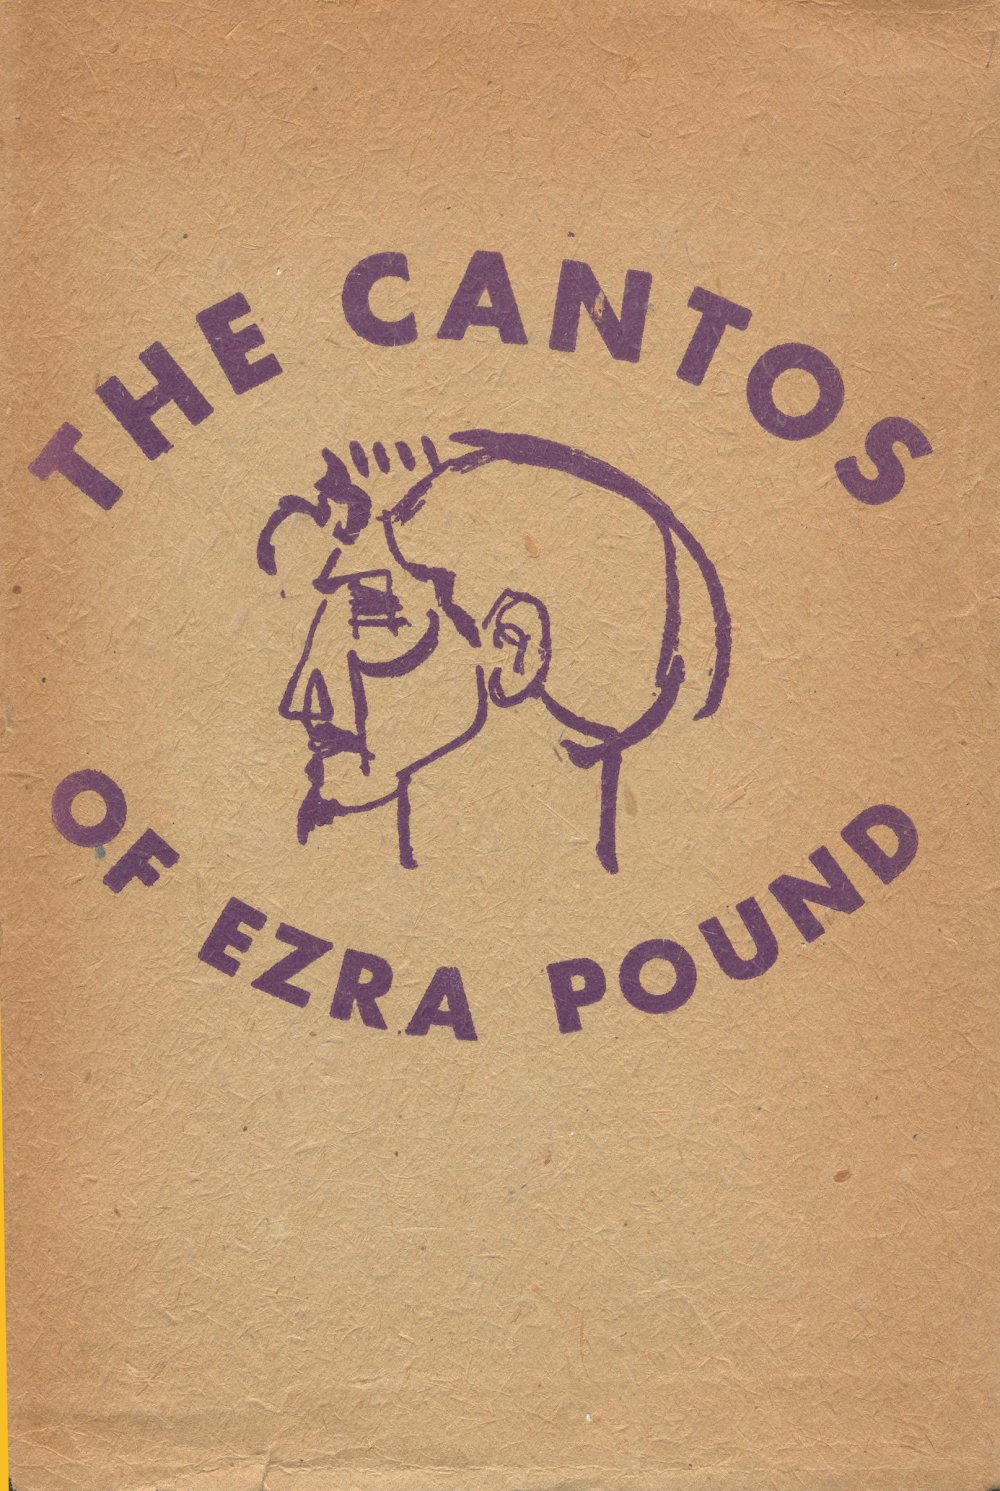 The Cantos (Ezra Pound, 1917-1969)